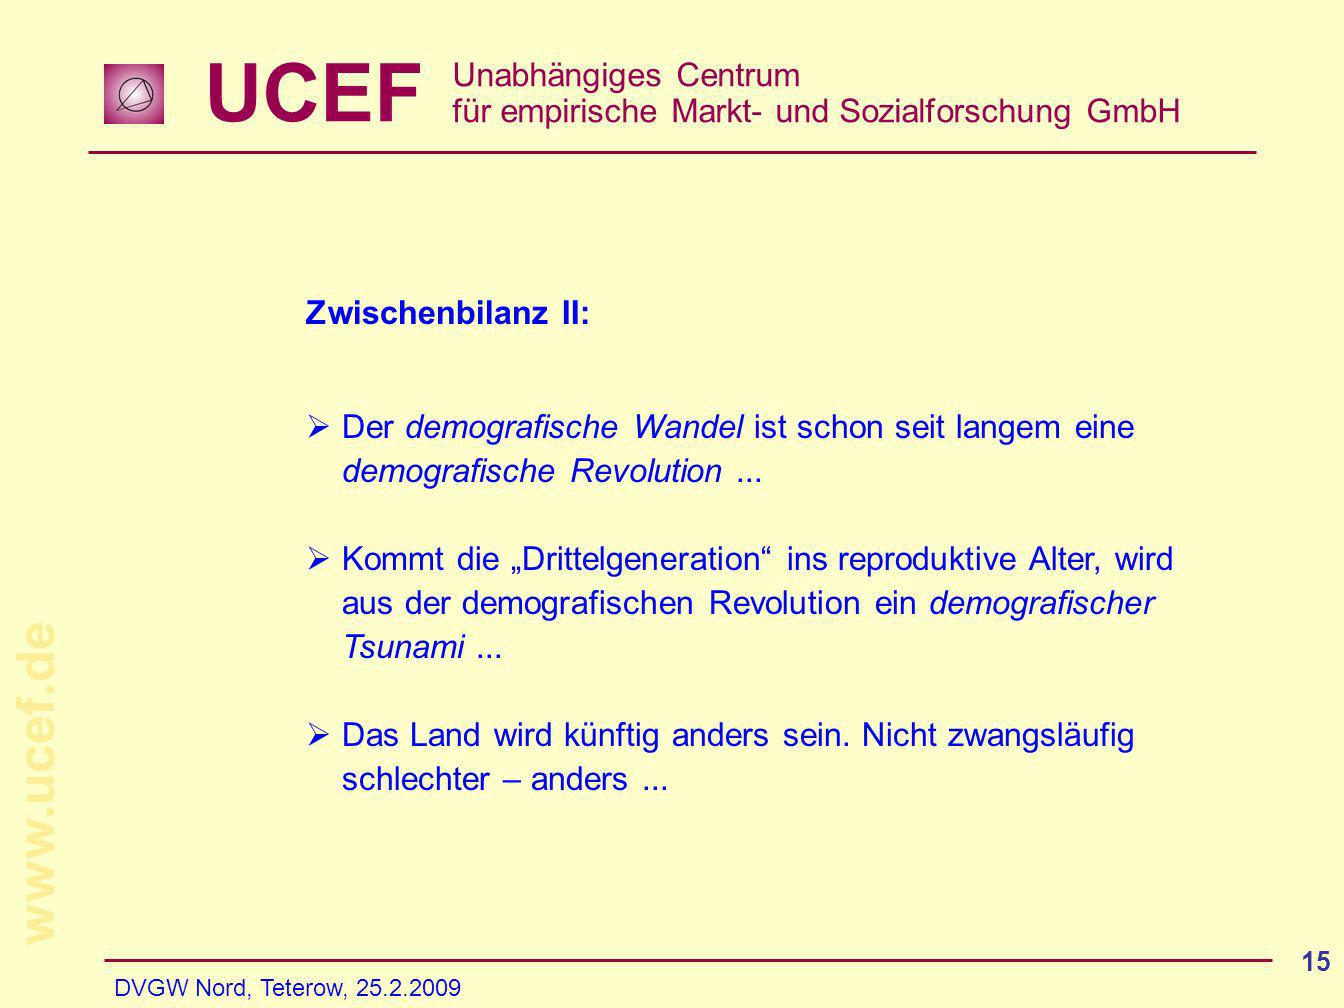 UCEF Unabhängiges Centrum für empirische Markt- und Sozialforschung GmbH   DVGW Nord, Teterow, Zwischenbilanz II: Der demografische Wandel ist schon seit langem eine demografische Revolution...